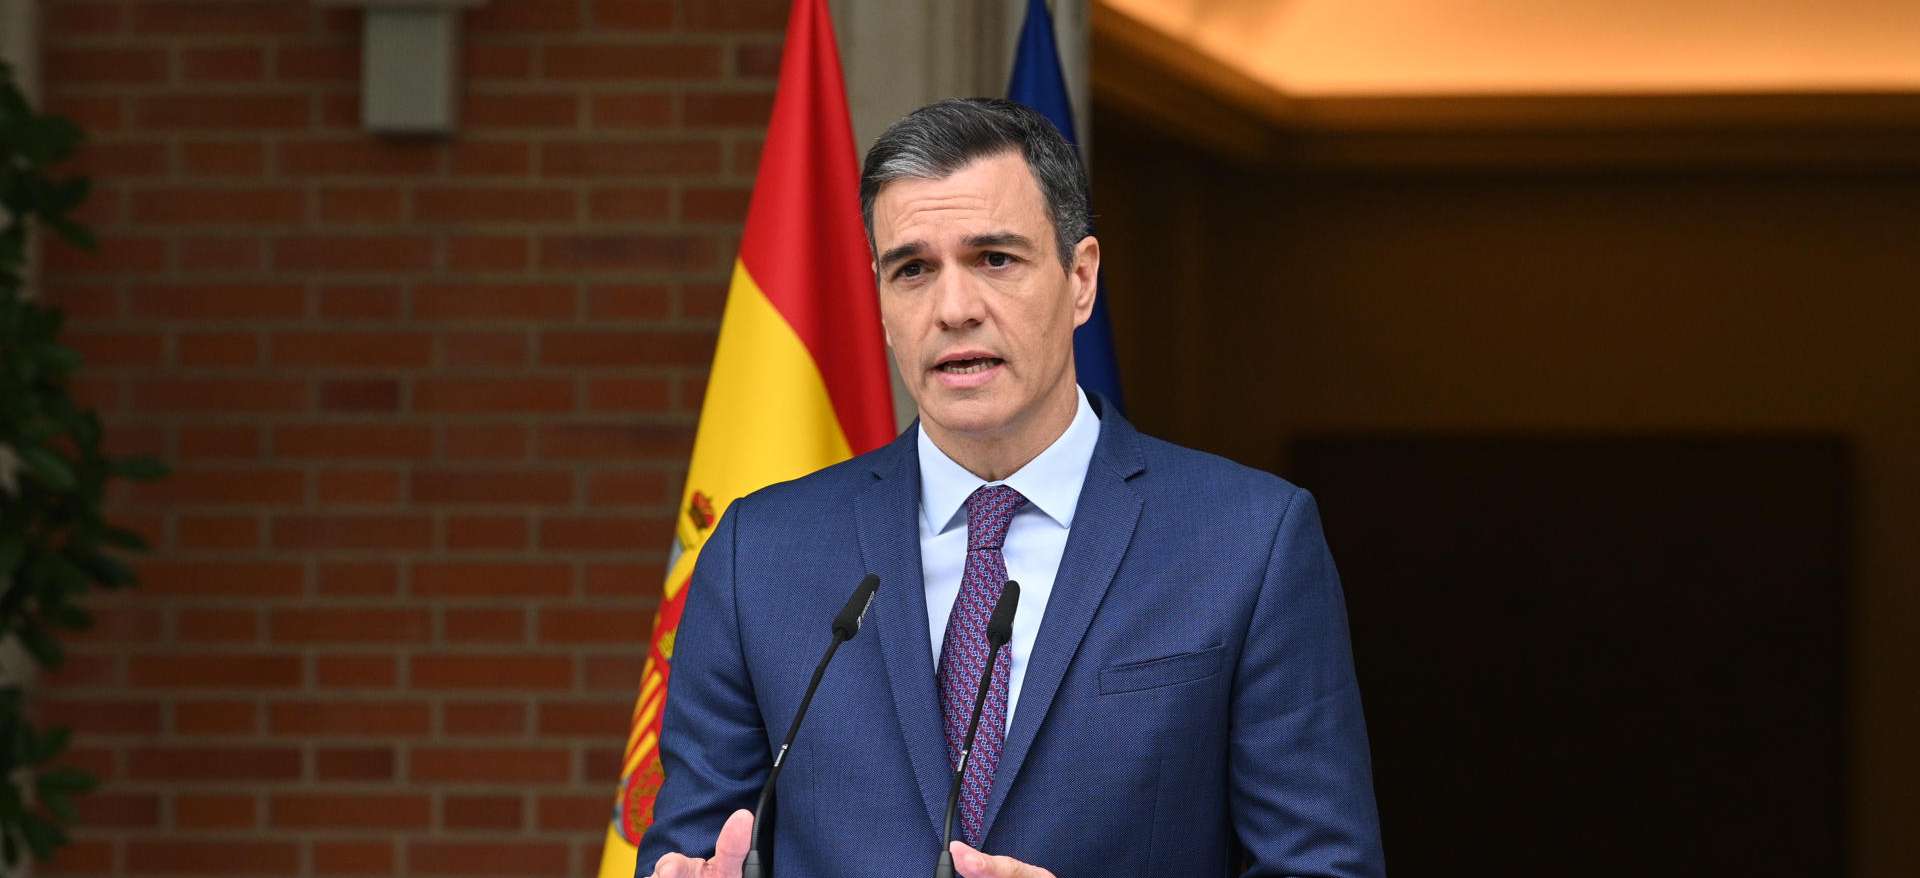 El presidente del Gobierno y secretario general del PSOE, Pedro Sánchez, a su salida de una reunión con los diputados y senadores socialistas, en el Congreso de los Diputados.